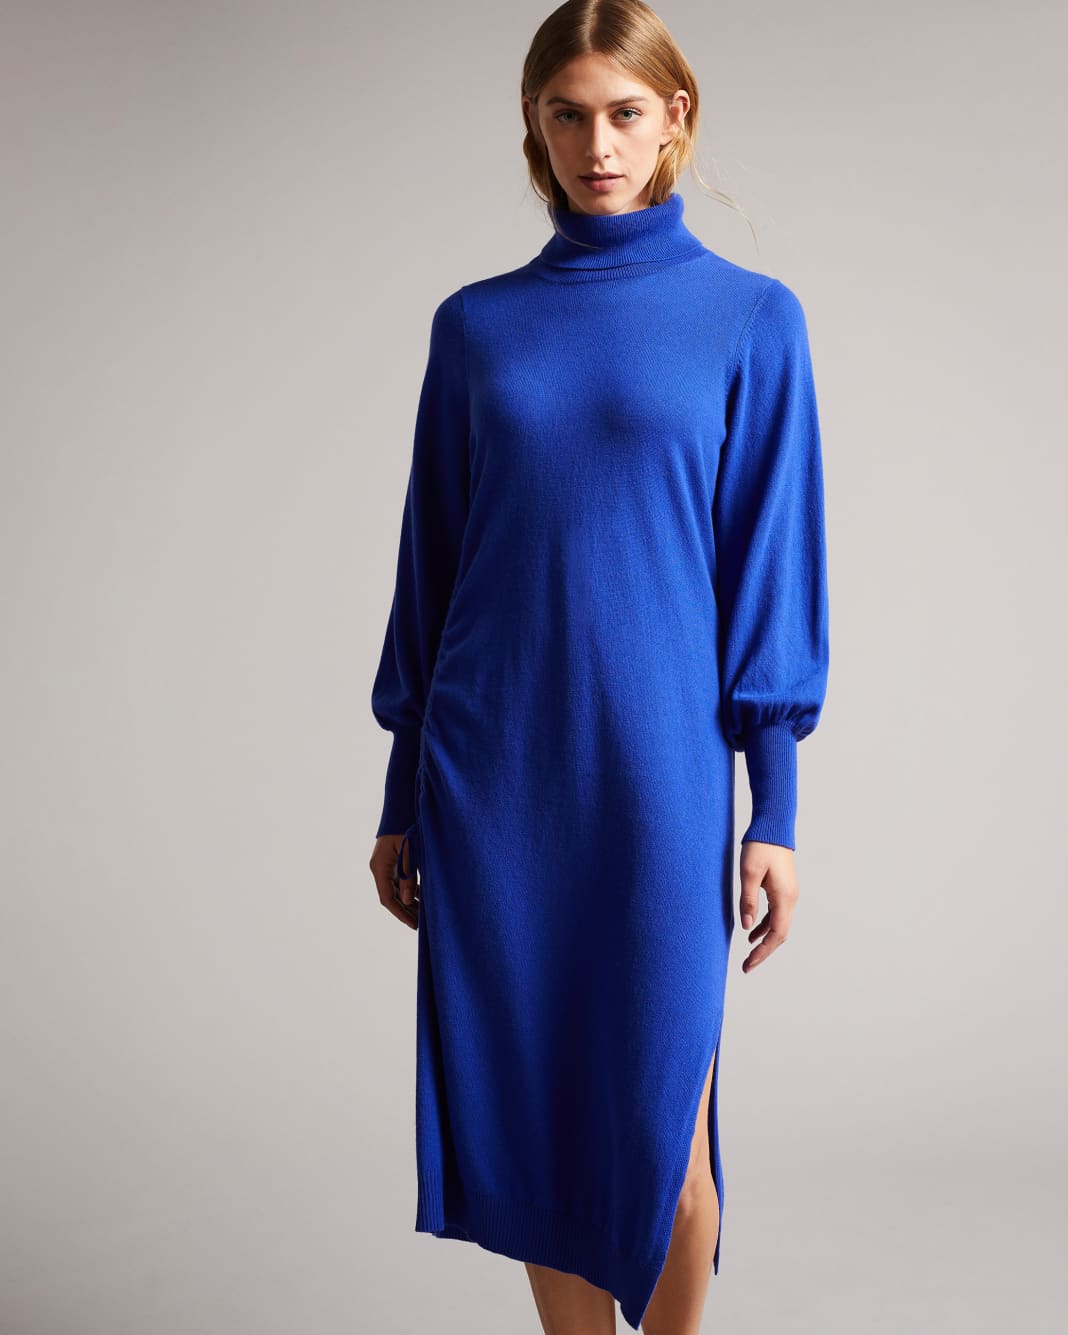 테드 베이커 원피스 Ted Baker Knitted Dress With Ruched Side Detail,Bright Blue